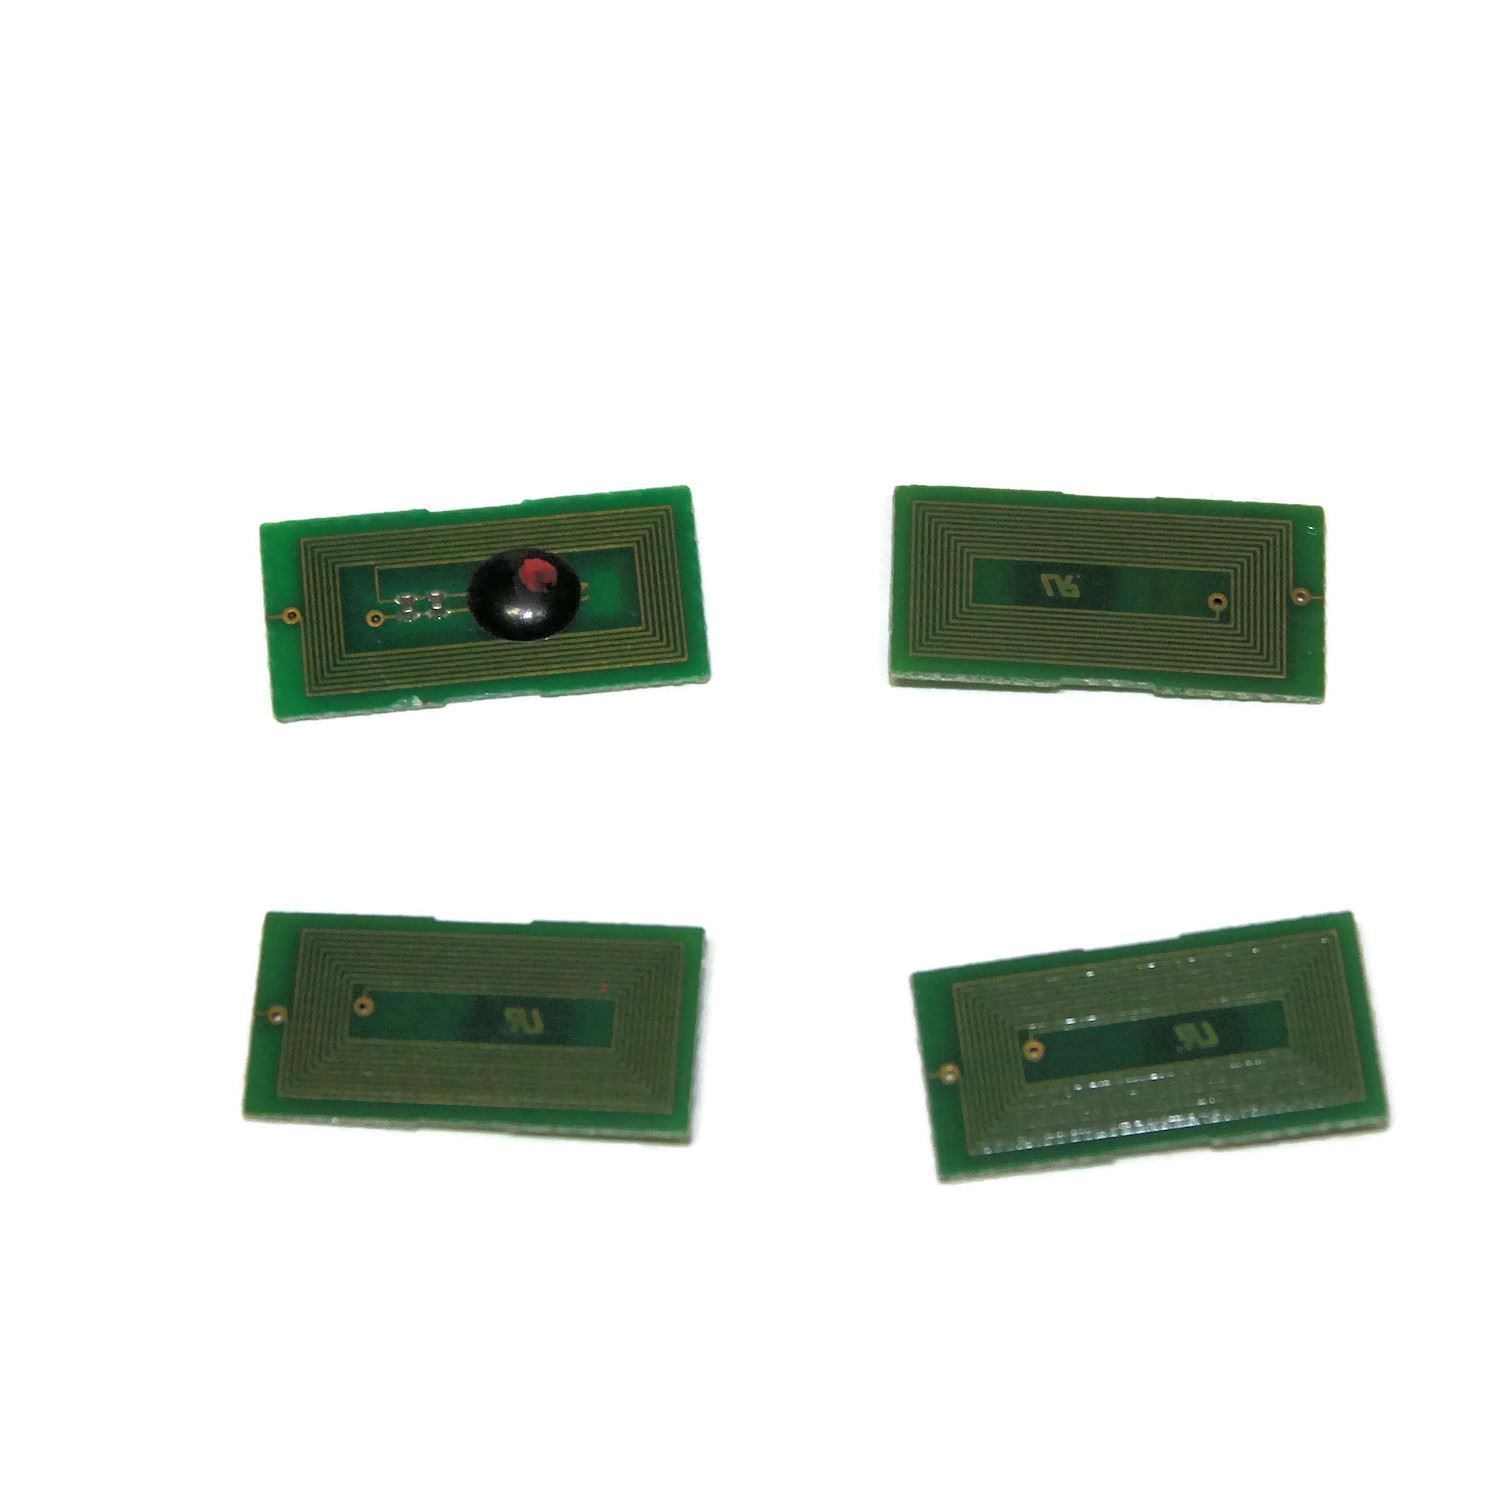 4x Toner Cartridge Reset Chips for Ricoh Aficio SP C810 C811 C811DN refill